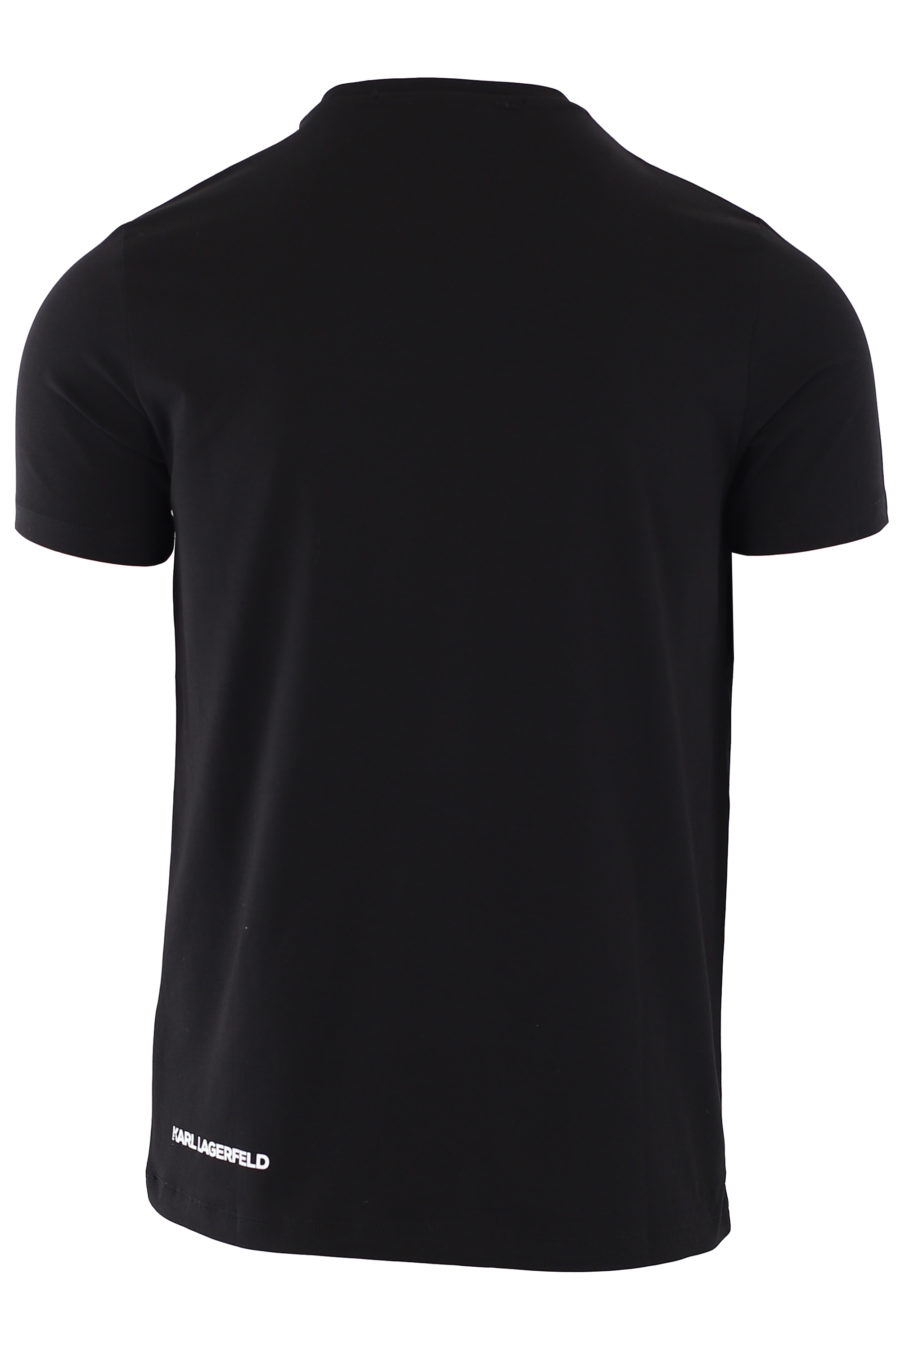 Schwarzes T-Shirt mit kleinem Seitenlogo - IMG 1373